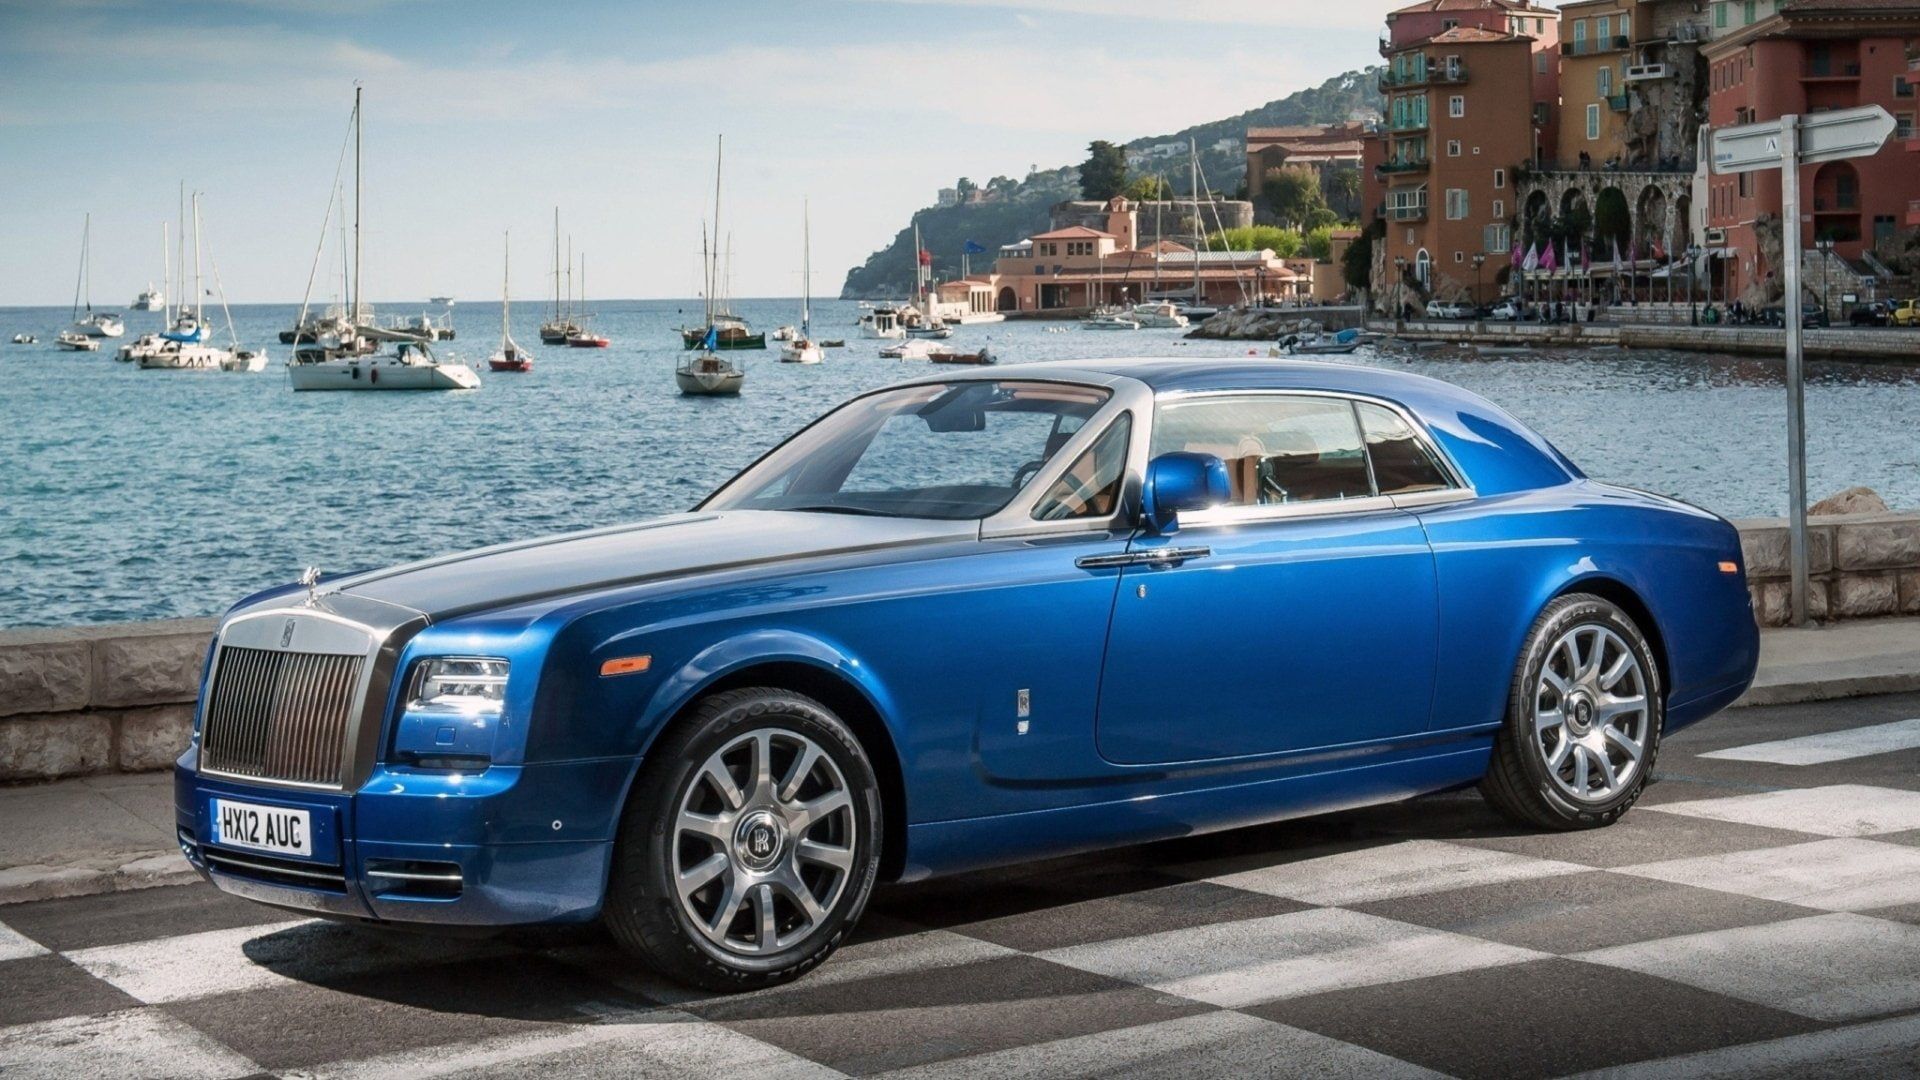 Rolls Royce, Rolls Royce Phantom, Blue Car, Car, Full Size Car